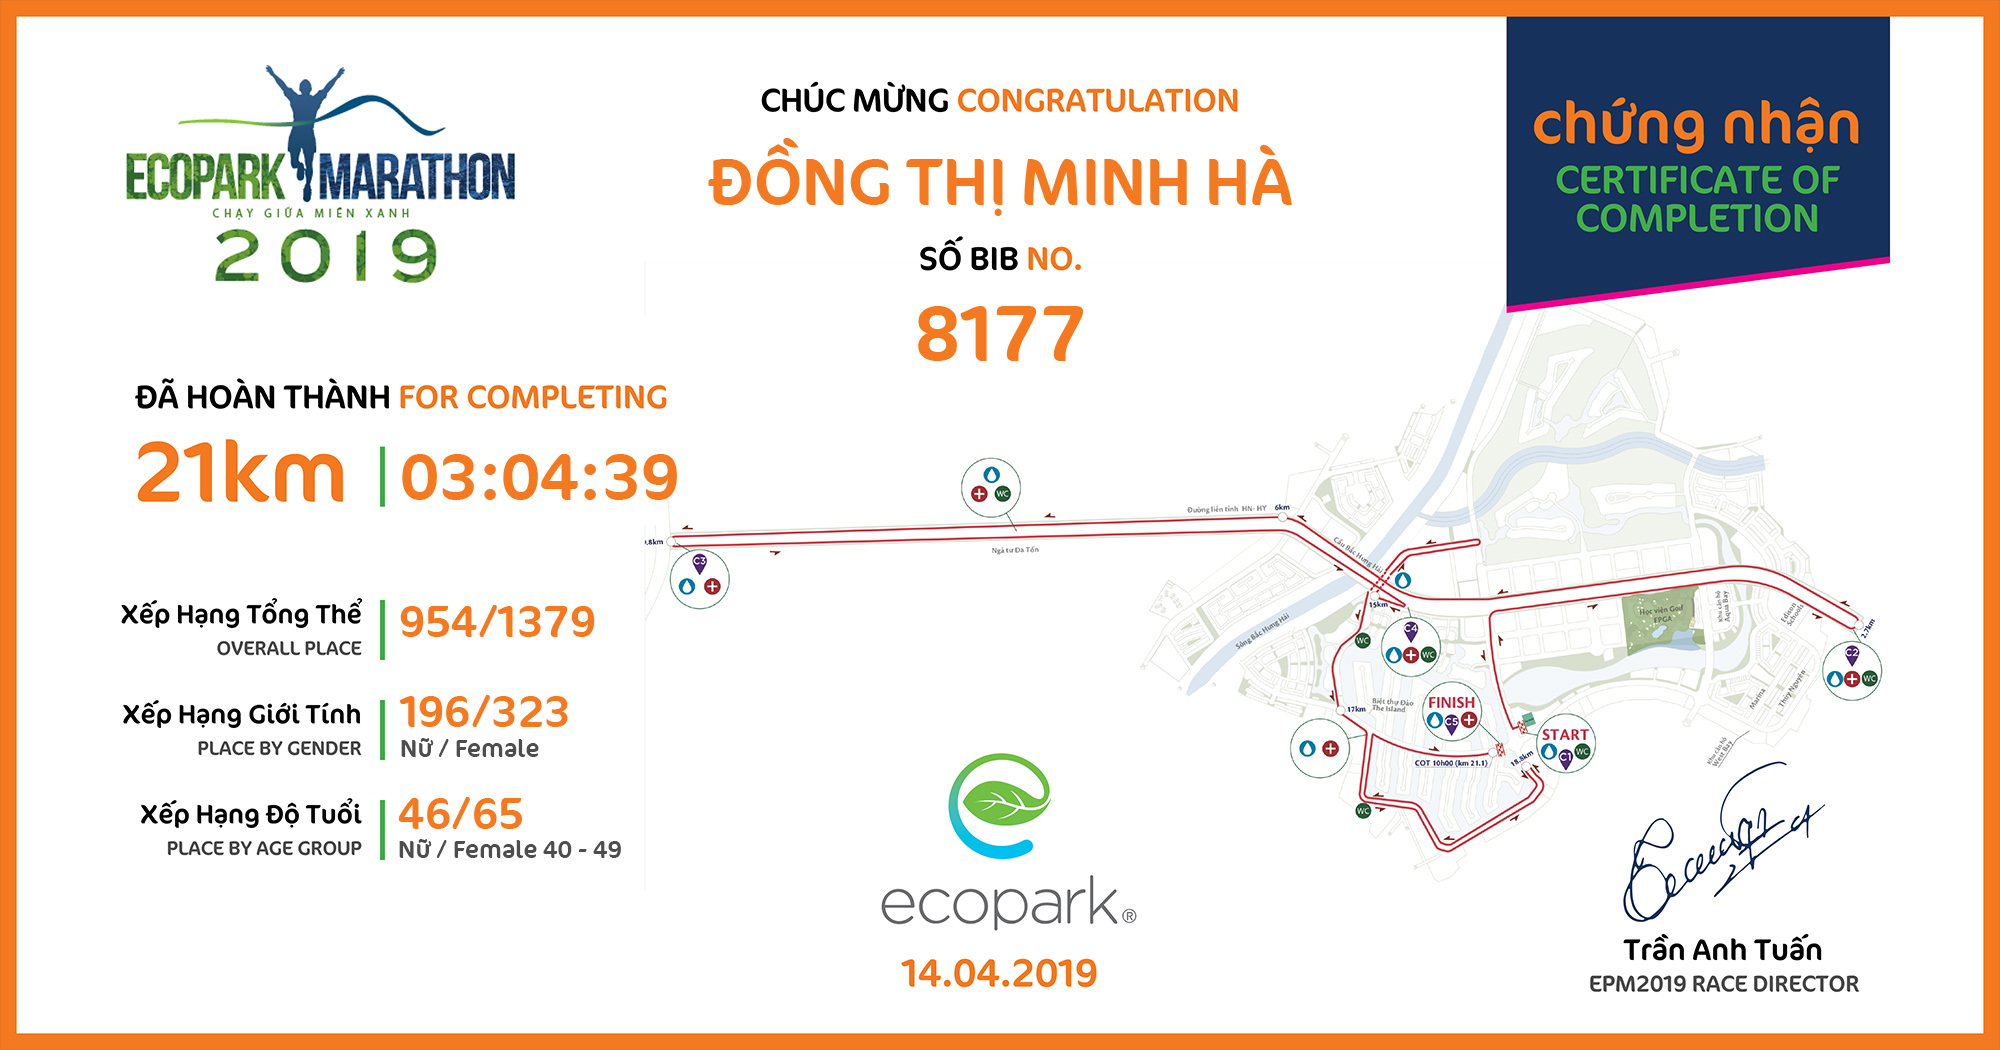 8177 - Đồng Thị Minh Hà